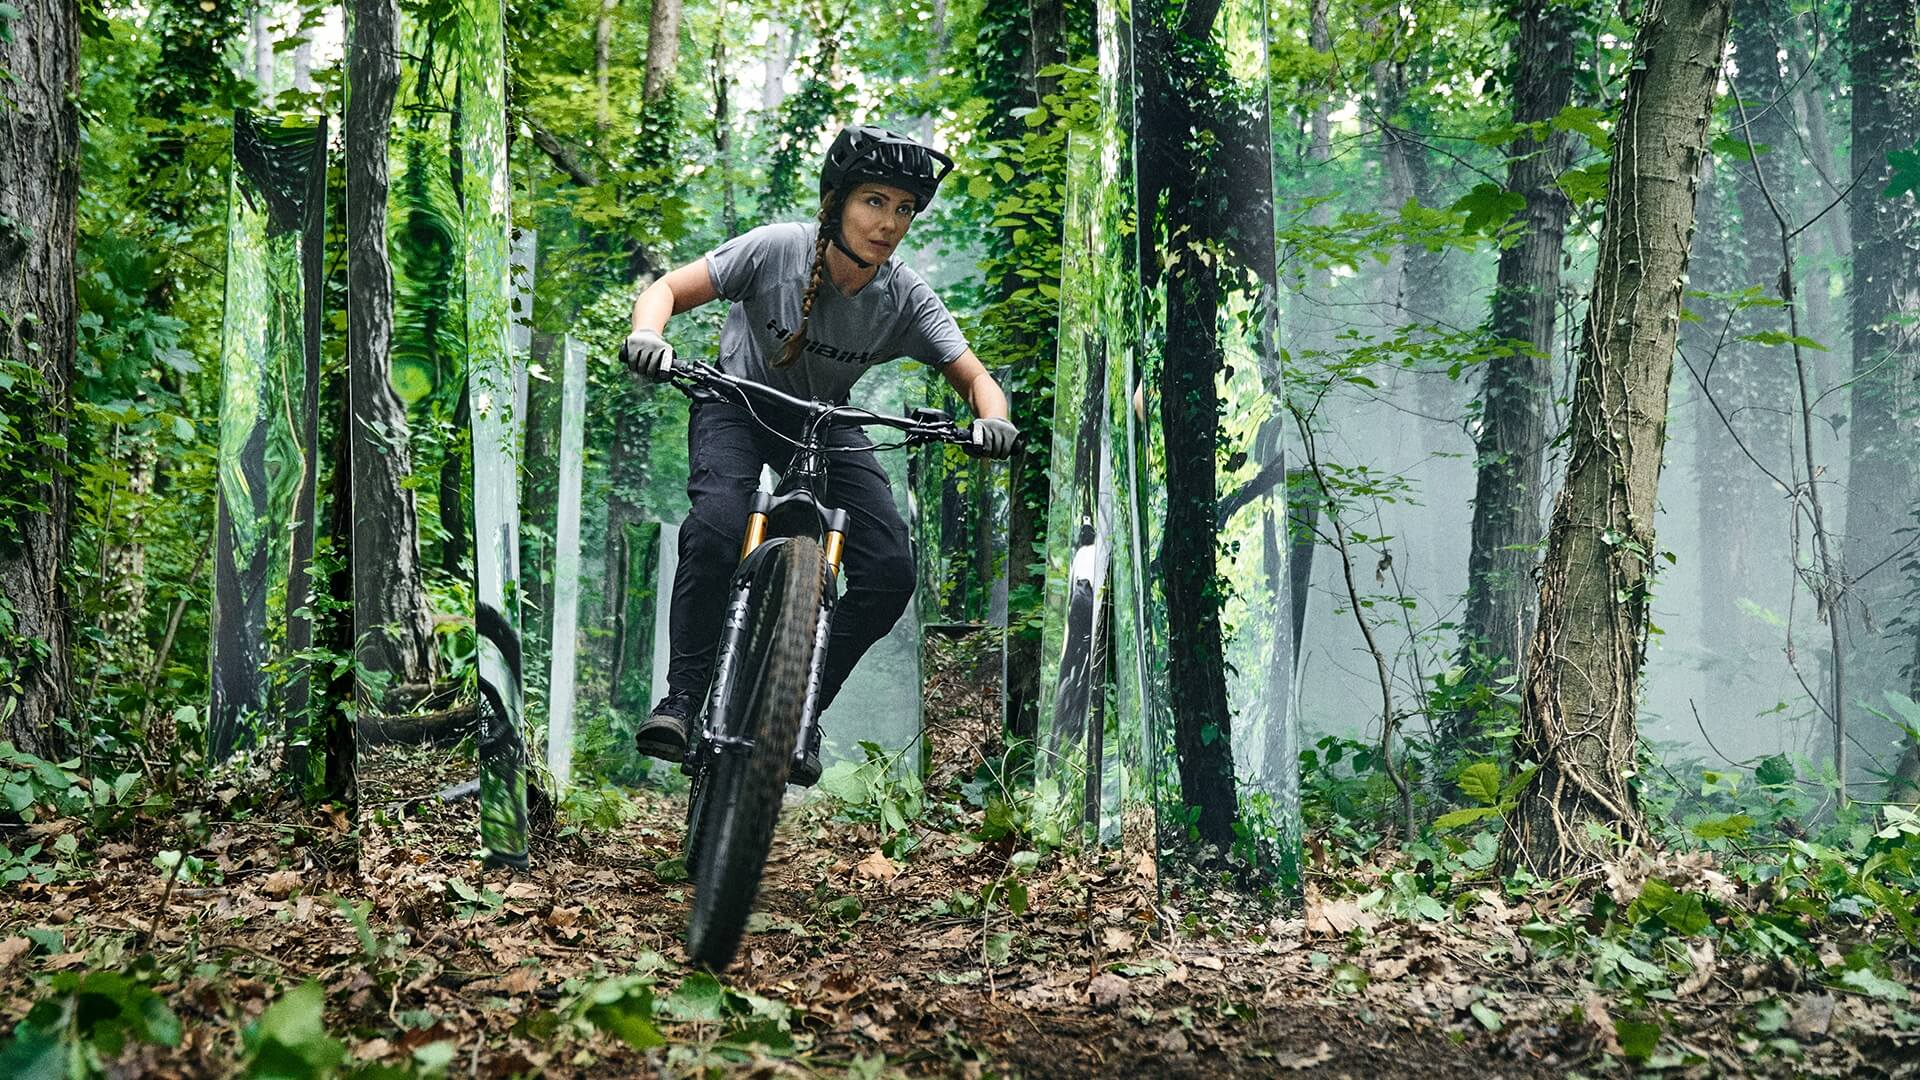 Celine cabalgando por un bosque futurista con espejos en su Haibike AllMtn 7 eMTB